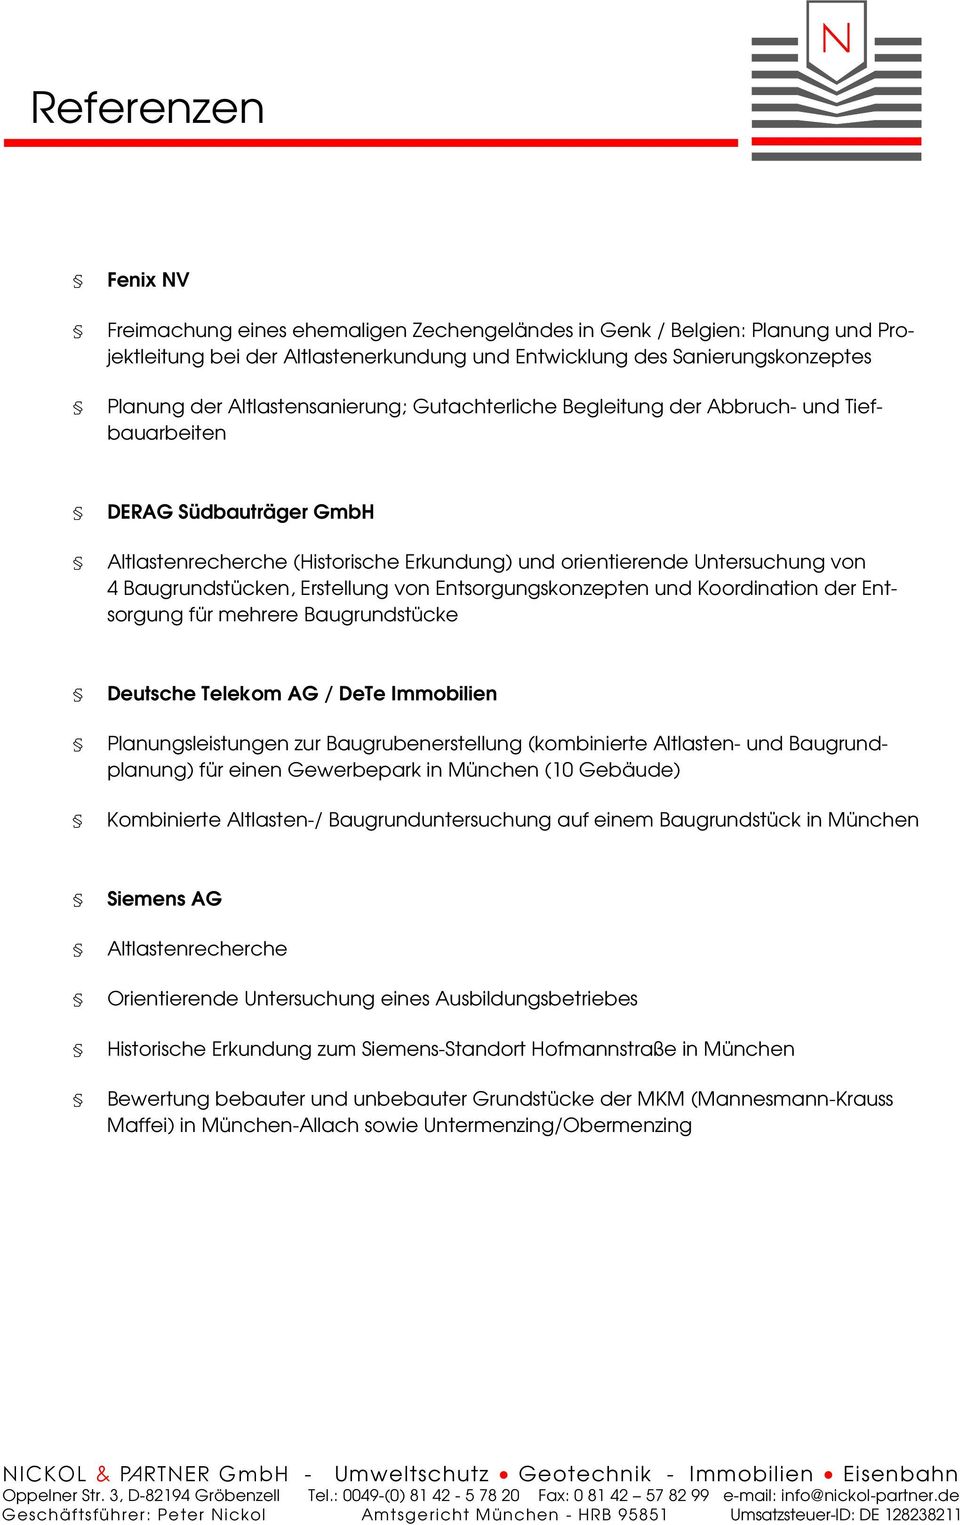 Erstellung von Entsorgungskonzepten und Koordination der Entsorgung für mehrere Baugrundstücke Deutsche Telekom AG / DeTe Immobilien Planungsleistungen zur Baugrubenerstellung (kombinierte Altlasten-